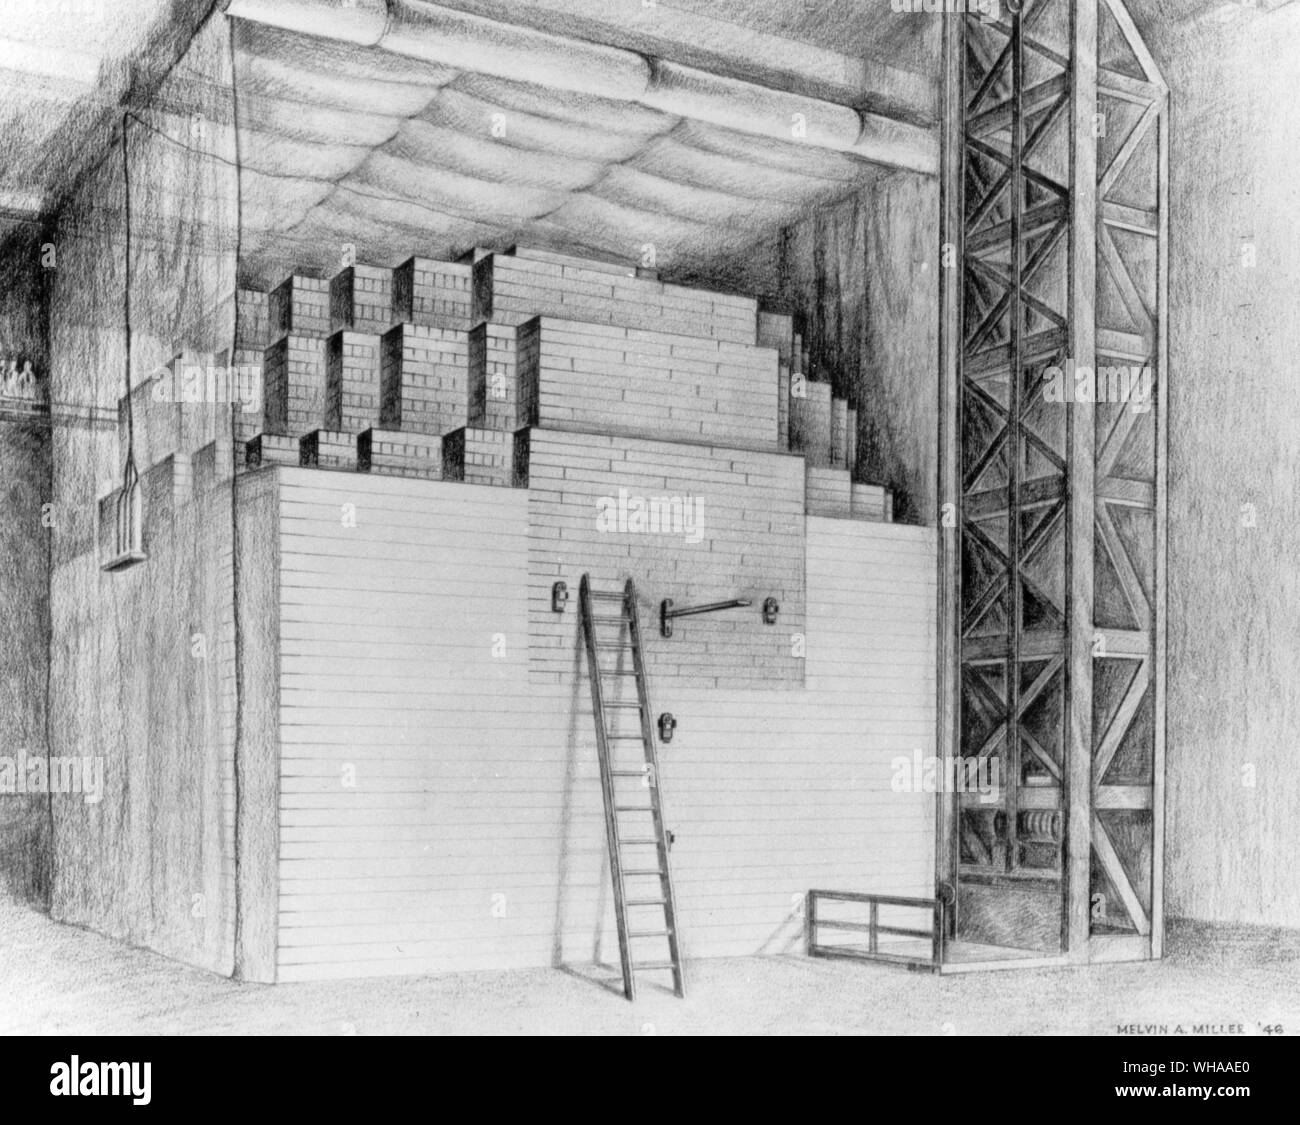 Croquis du premier réacteur. En raison du secret de guerre il n'y a pas de photographies du réacteur. Le réacteur lui-même était composé de couches de graphite entrecoupées de l'uranium. De l'importance, c'est l'autonomie, la réaction en chaîne soutenue, a été réalisé le 2 décembre 1942, lors de la 57e couche a été ajouté. Cela a donné lieu aux premiers réacteurs pour nom ' ' pieux à cause de l'empilage d'un calque sur un autre. L'exercice d'un contrôle de la libération de la puissance de l'atome était une grande avancée dans ce qui était alors une course pour faire une arme atomique. Parole de la réussite a été immédiatement téléphoné à Washington Banque D'Images